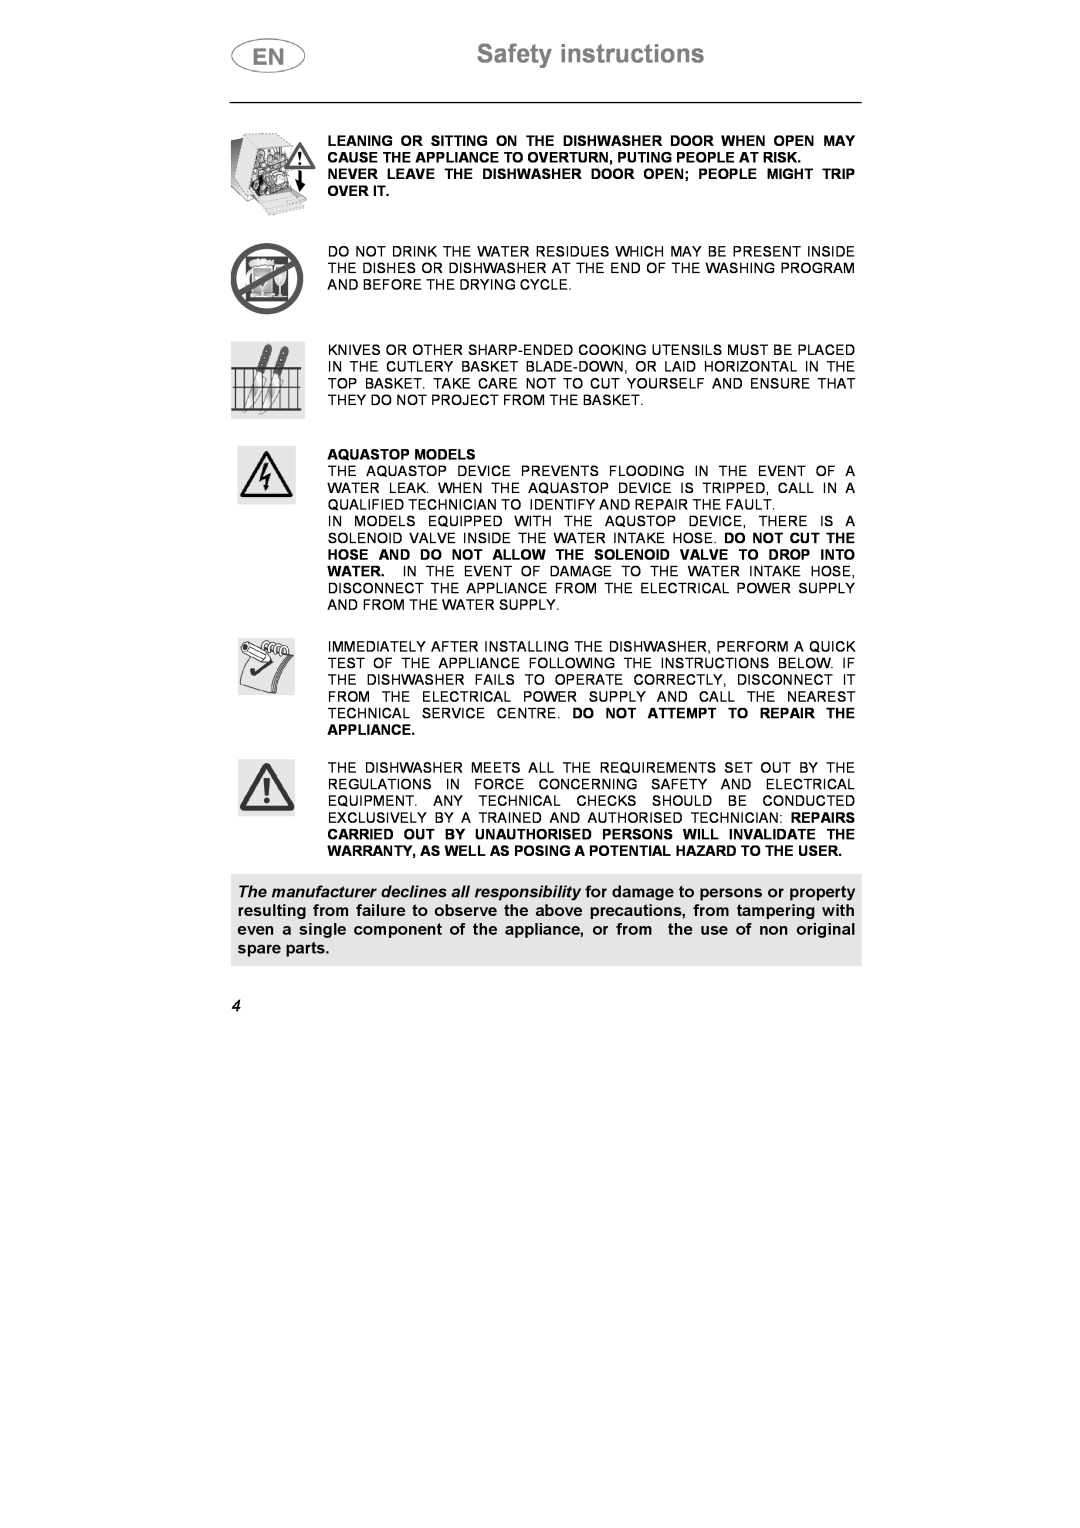 Smeg CA01S, CA01-5, CA01-4 manual Safety instructions, Aquastop Models 